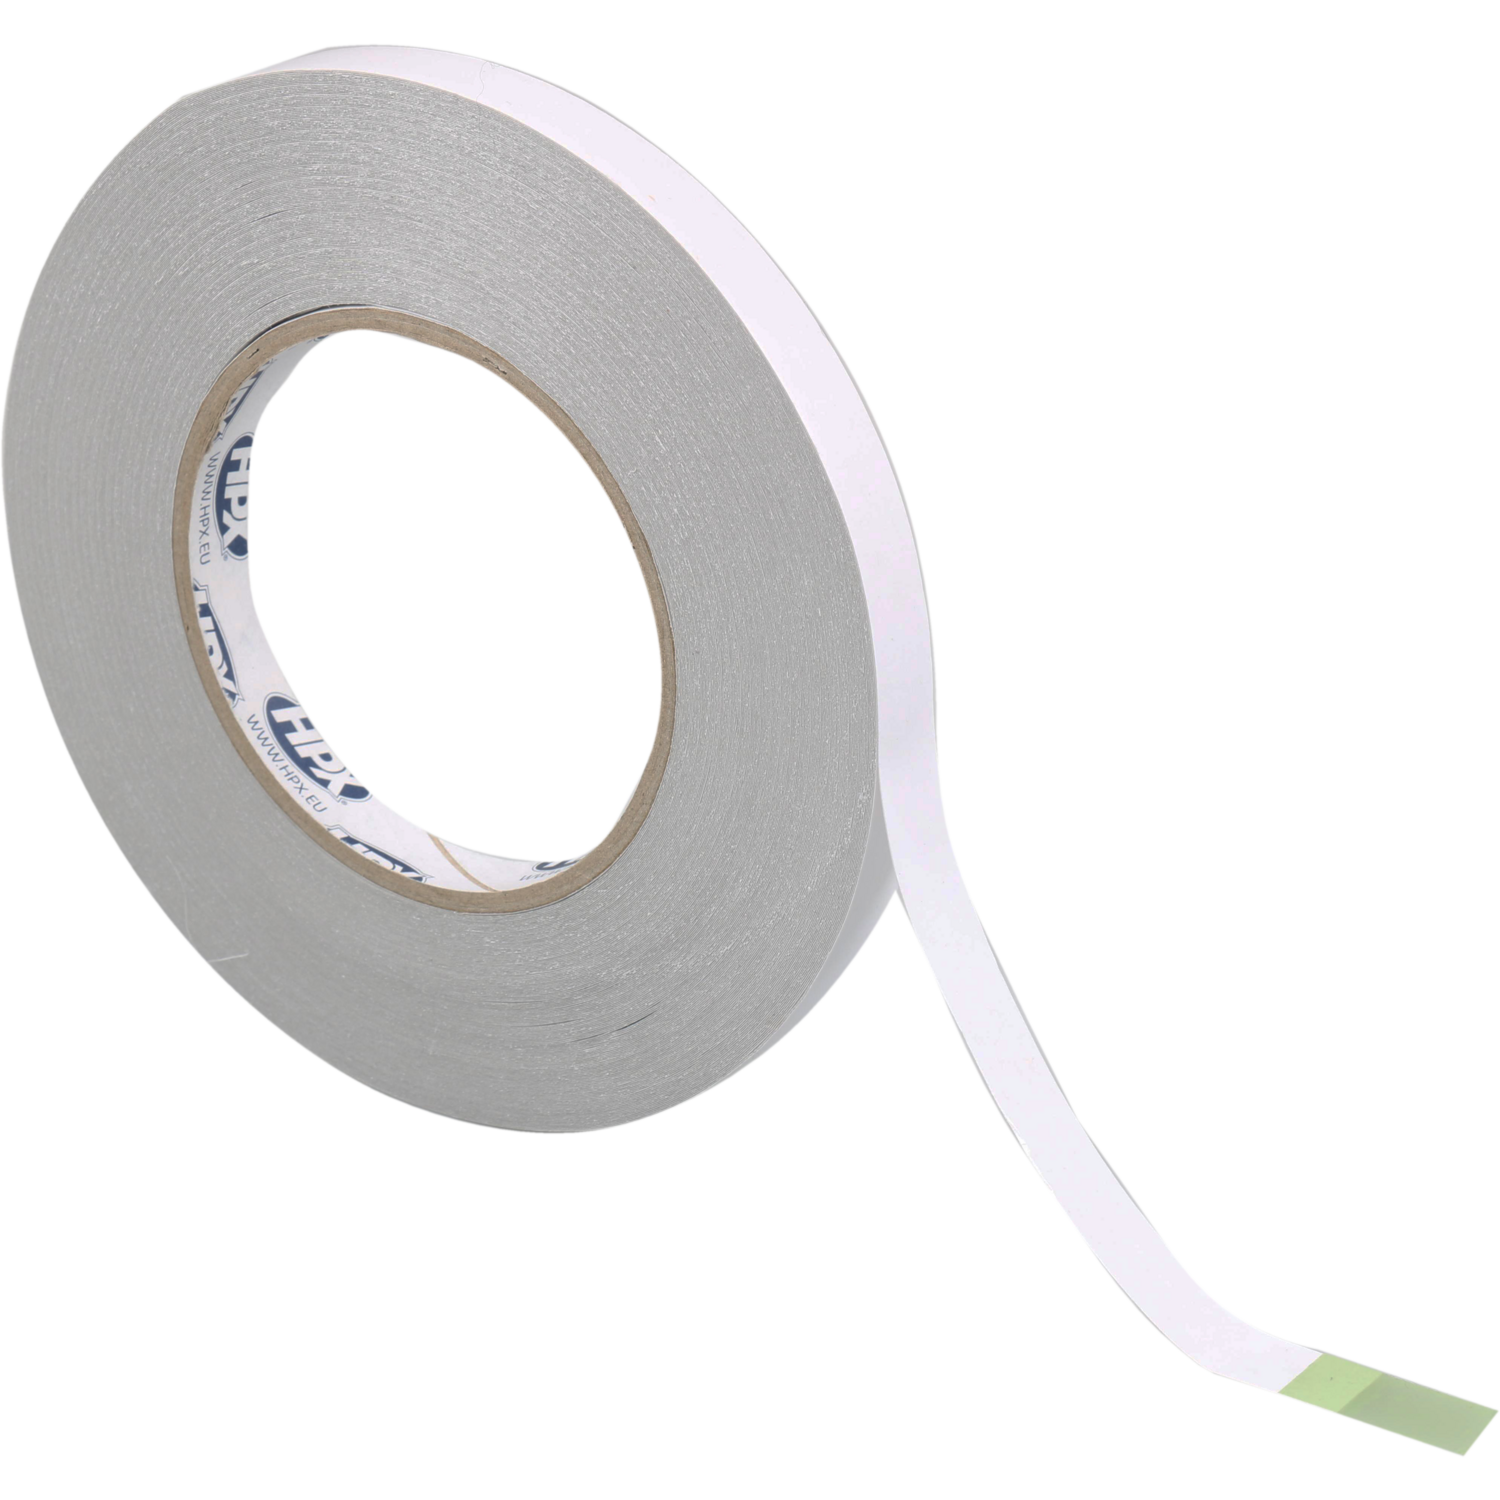 HPX, Dubbelklevend tape, PP, 50m, wit (555273), HPX - Paardekooper B.V.